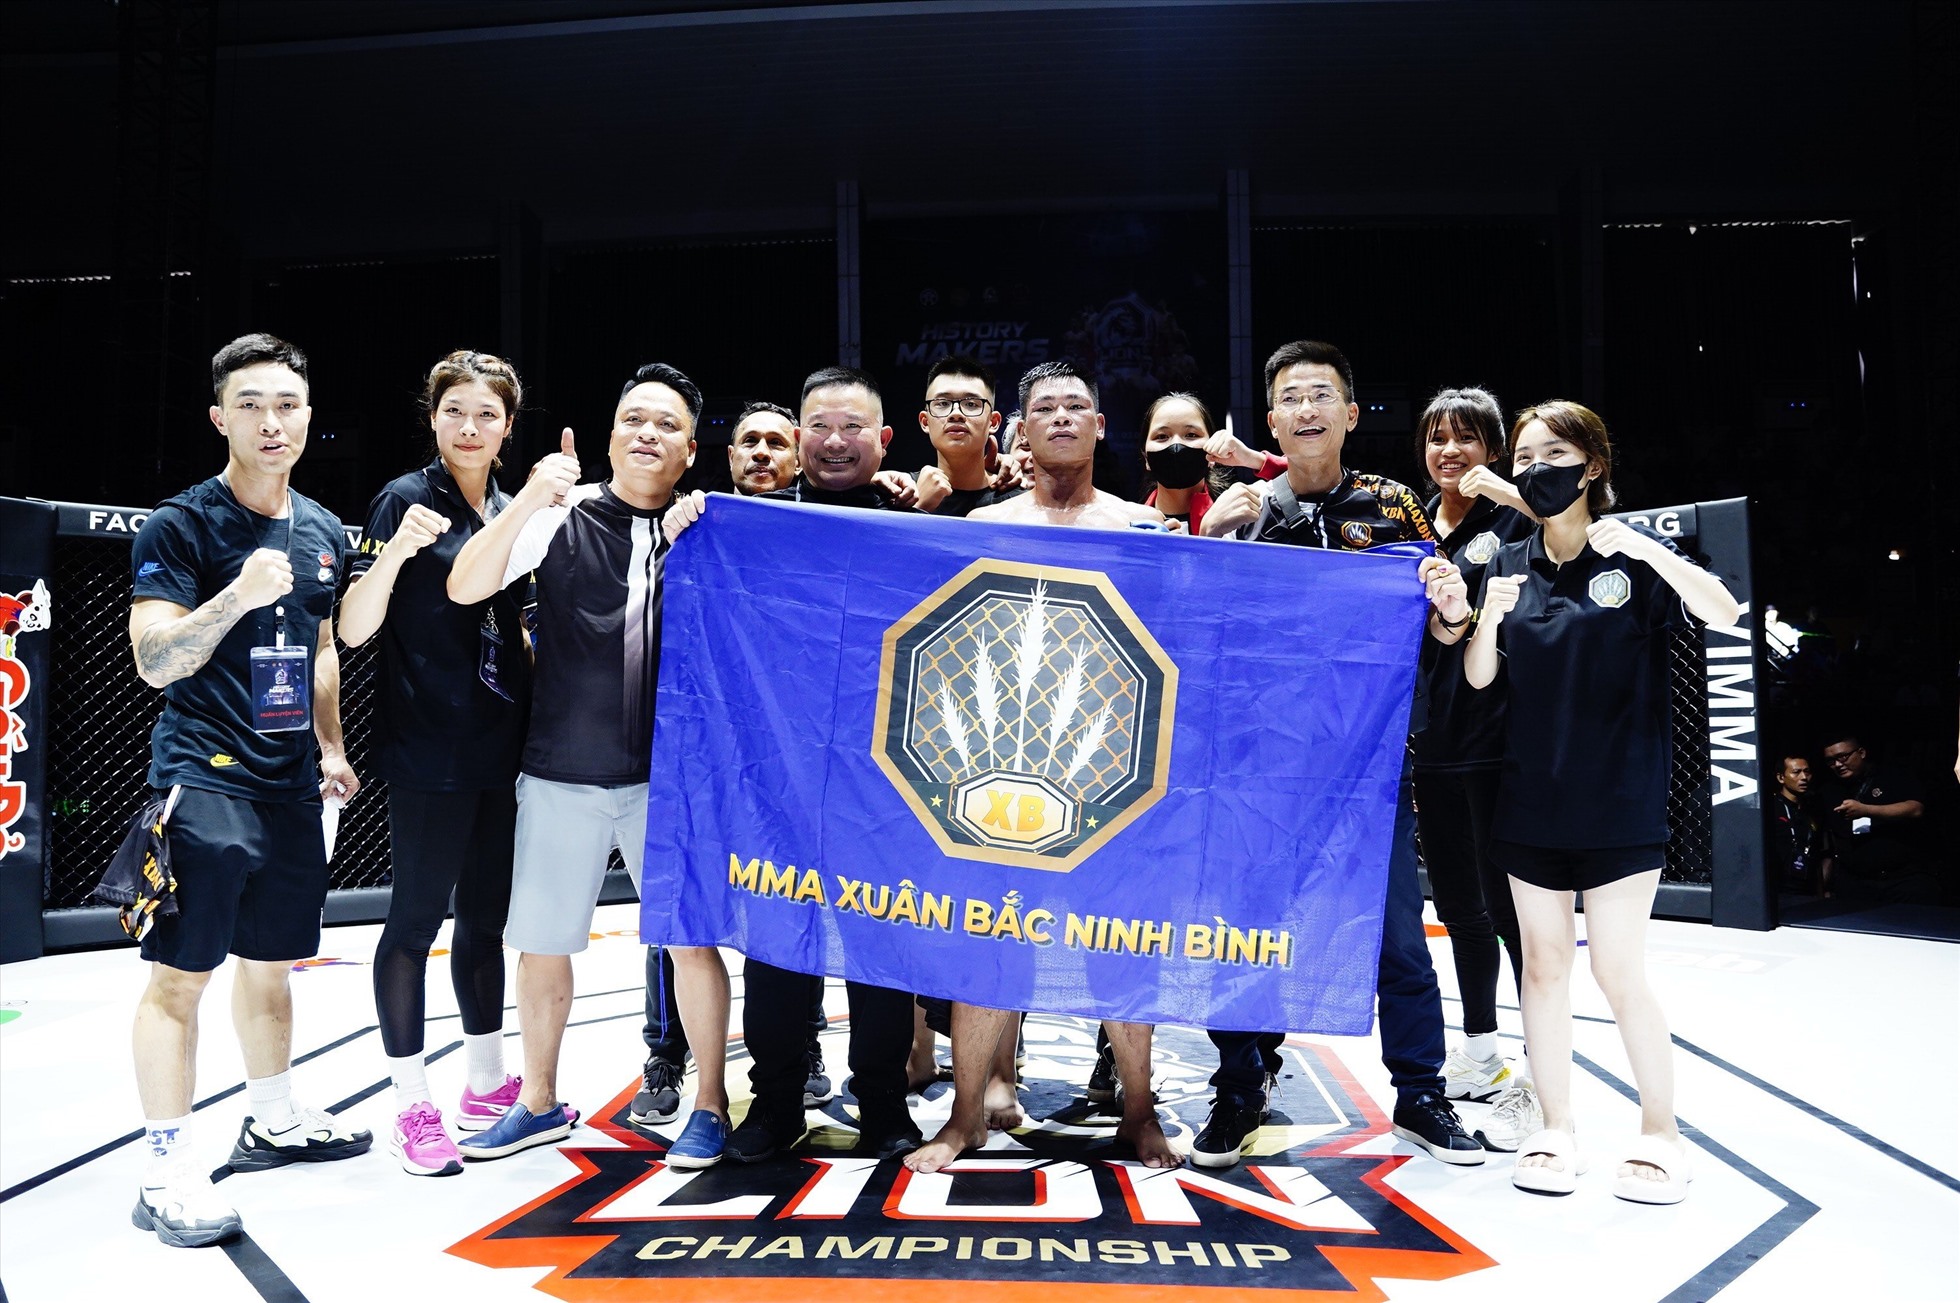 Ngày 3.6, giải đấu võ thuật tổng hợp đáng chú ý nhất tháng 6 - MMA Lion Championship 06 đã được diễn ra tại nhà thi đấu Tây Hồ (Hà Nội).